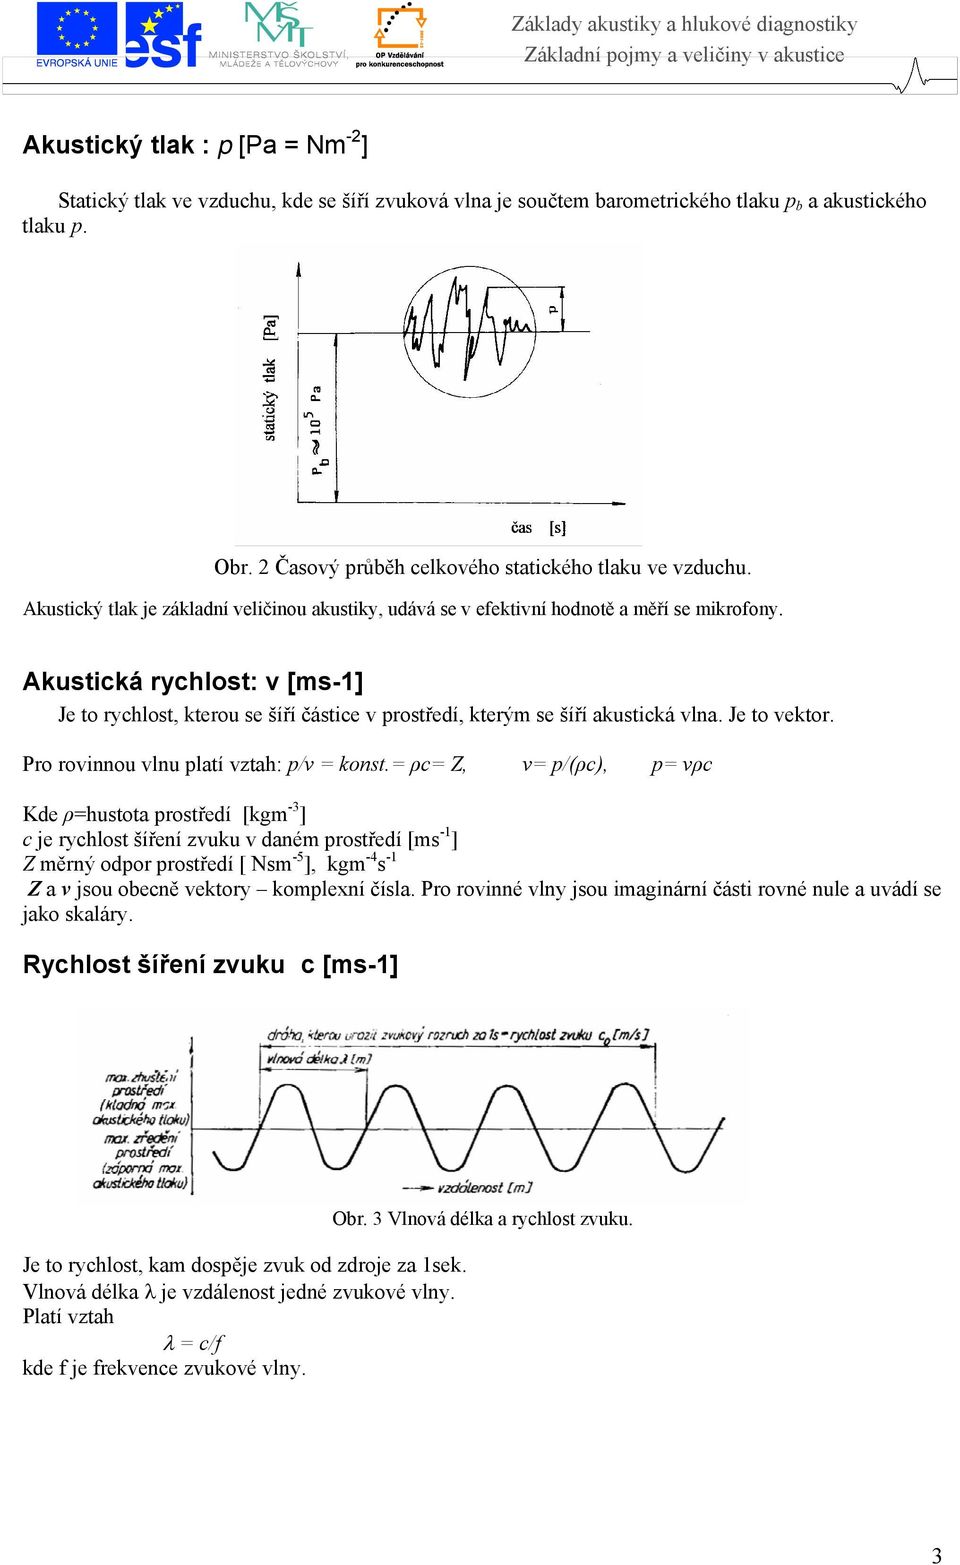 Akustická rychlost: v [ms-1] Je to rychlost, kterou se šíří částice v prostředí, kterým se šíří akustická vlna. Je to vektor. Pro rovinnou vlnu platí vztah: p/v = konst.